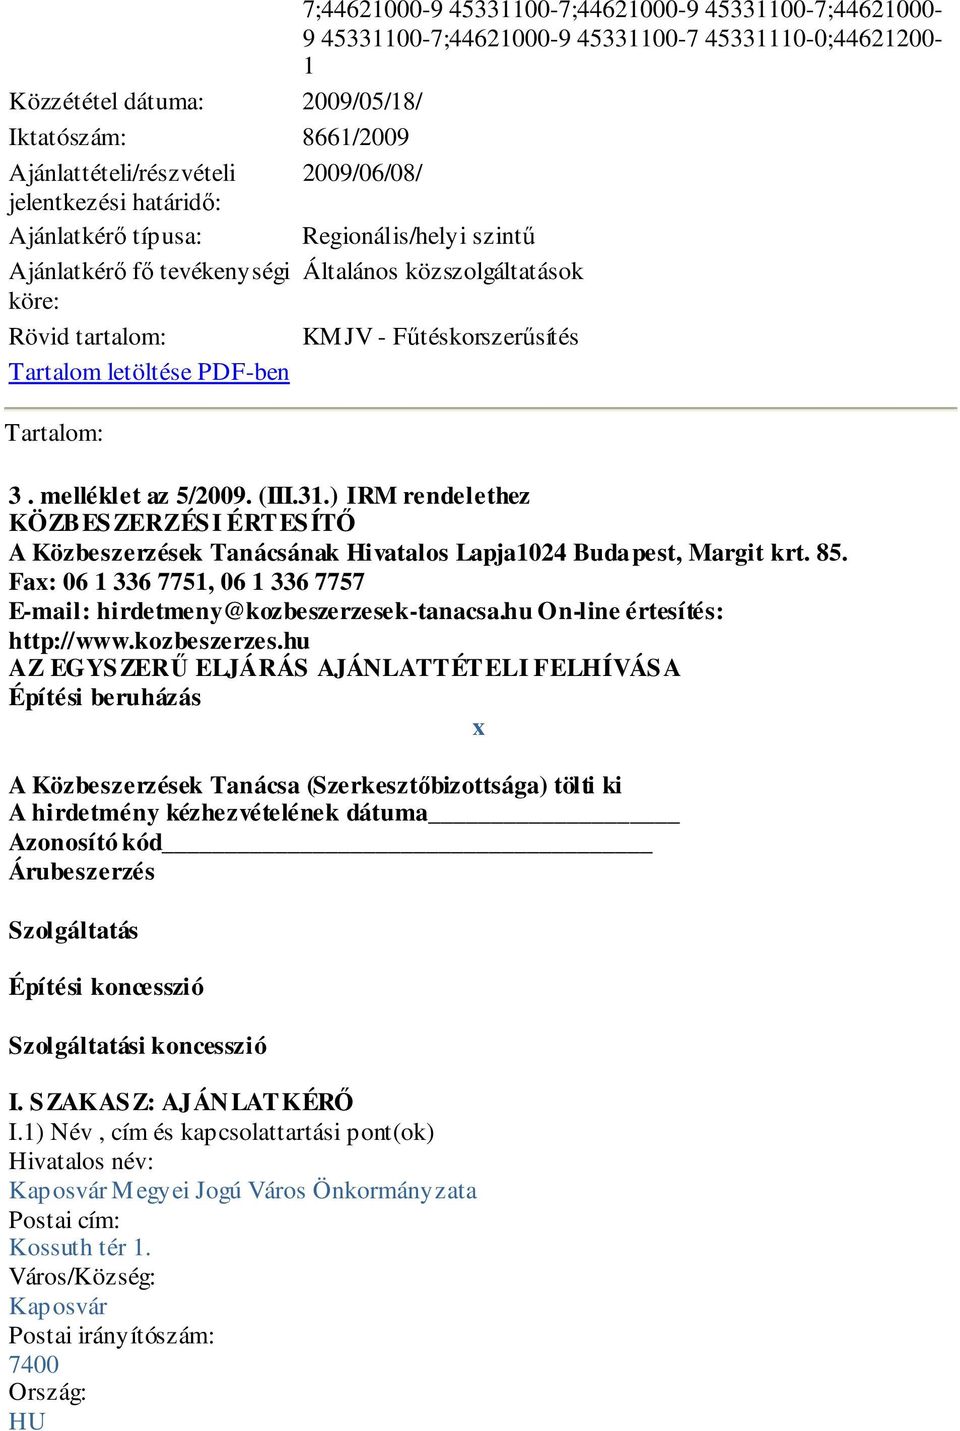 letöltése PDF-ben Tartalom: 3. melléklet az 5/2009. (III.31.) IRM rendelethez KÖZBESZERZÉSI ÉRTESÍTŐ A Közbeszerzések Tanácsának Hivatalos Lapja1024 Budapest, Margit krt. 85.